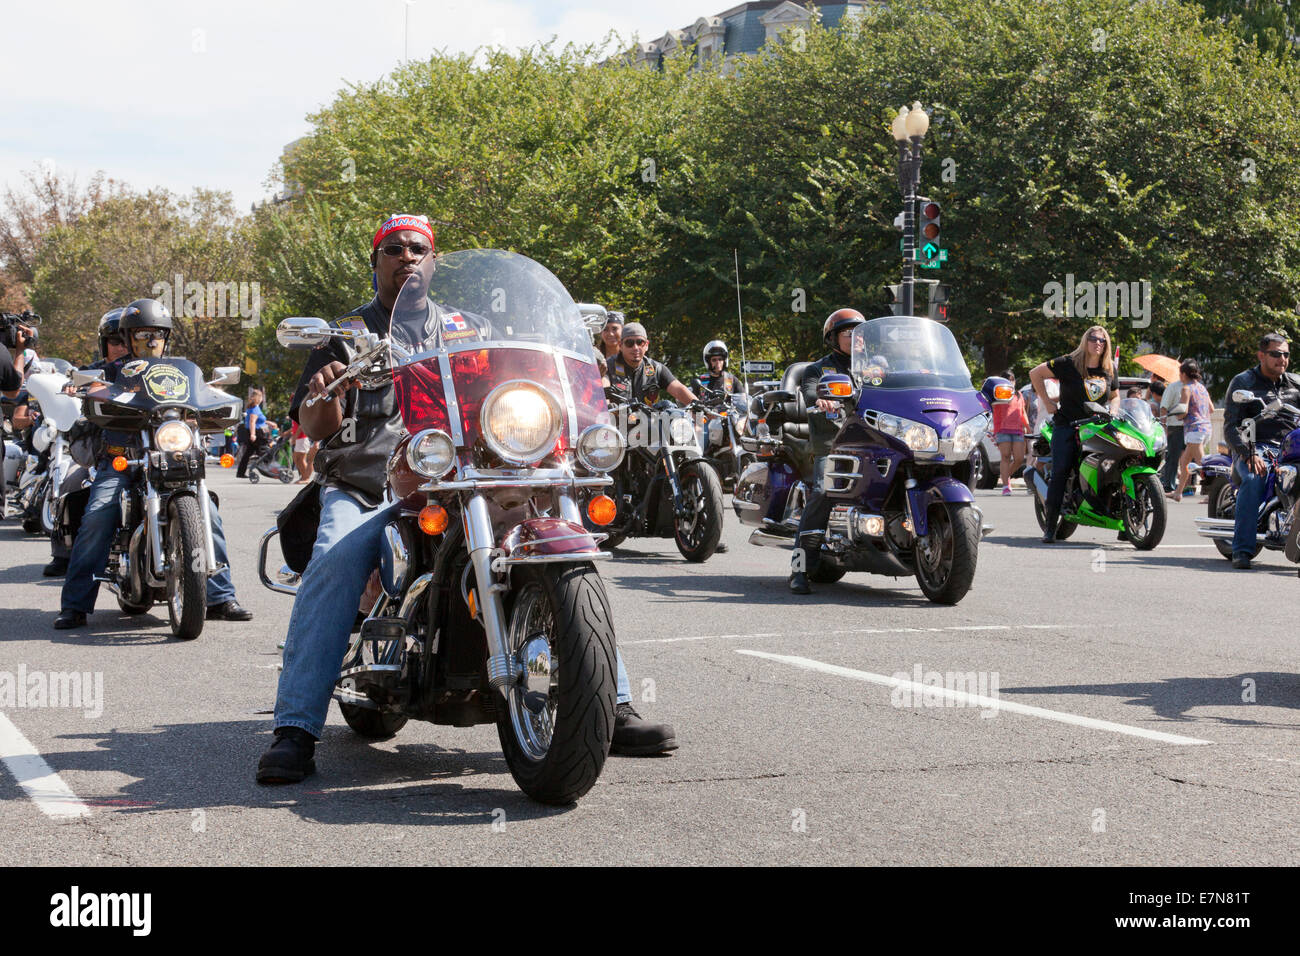 Harley Davidson motorcycle riders club at parade - USA Stock Photo